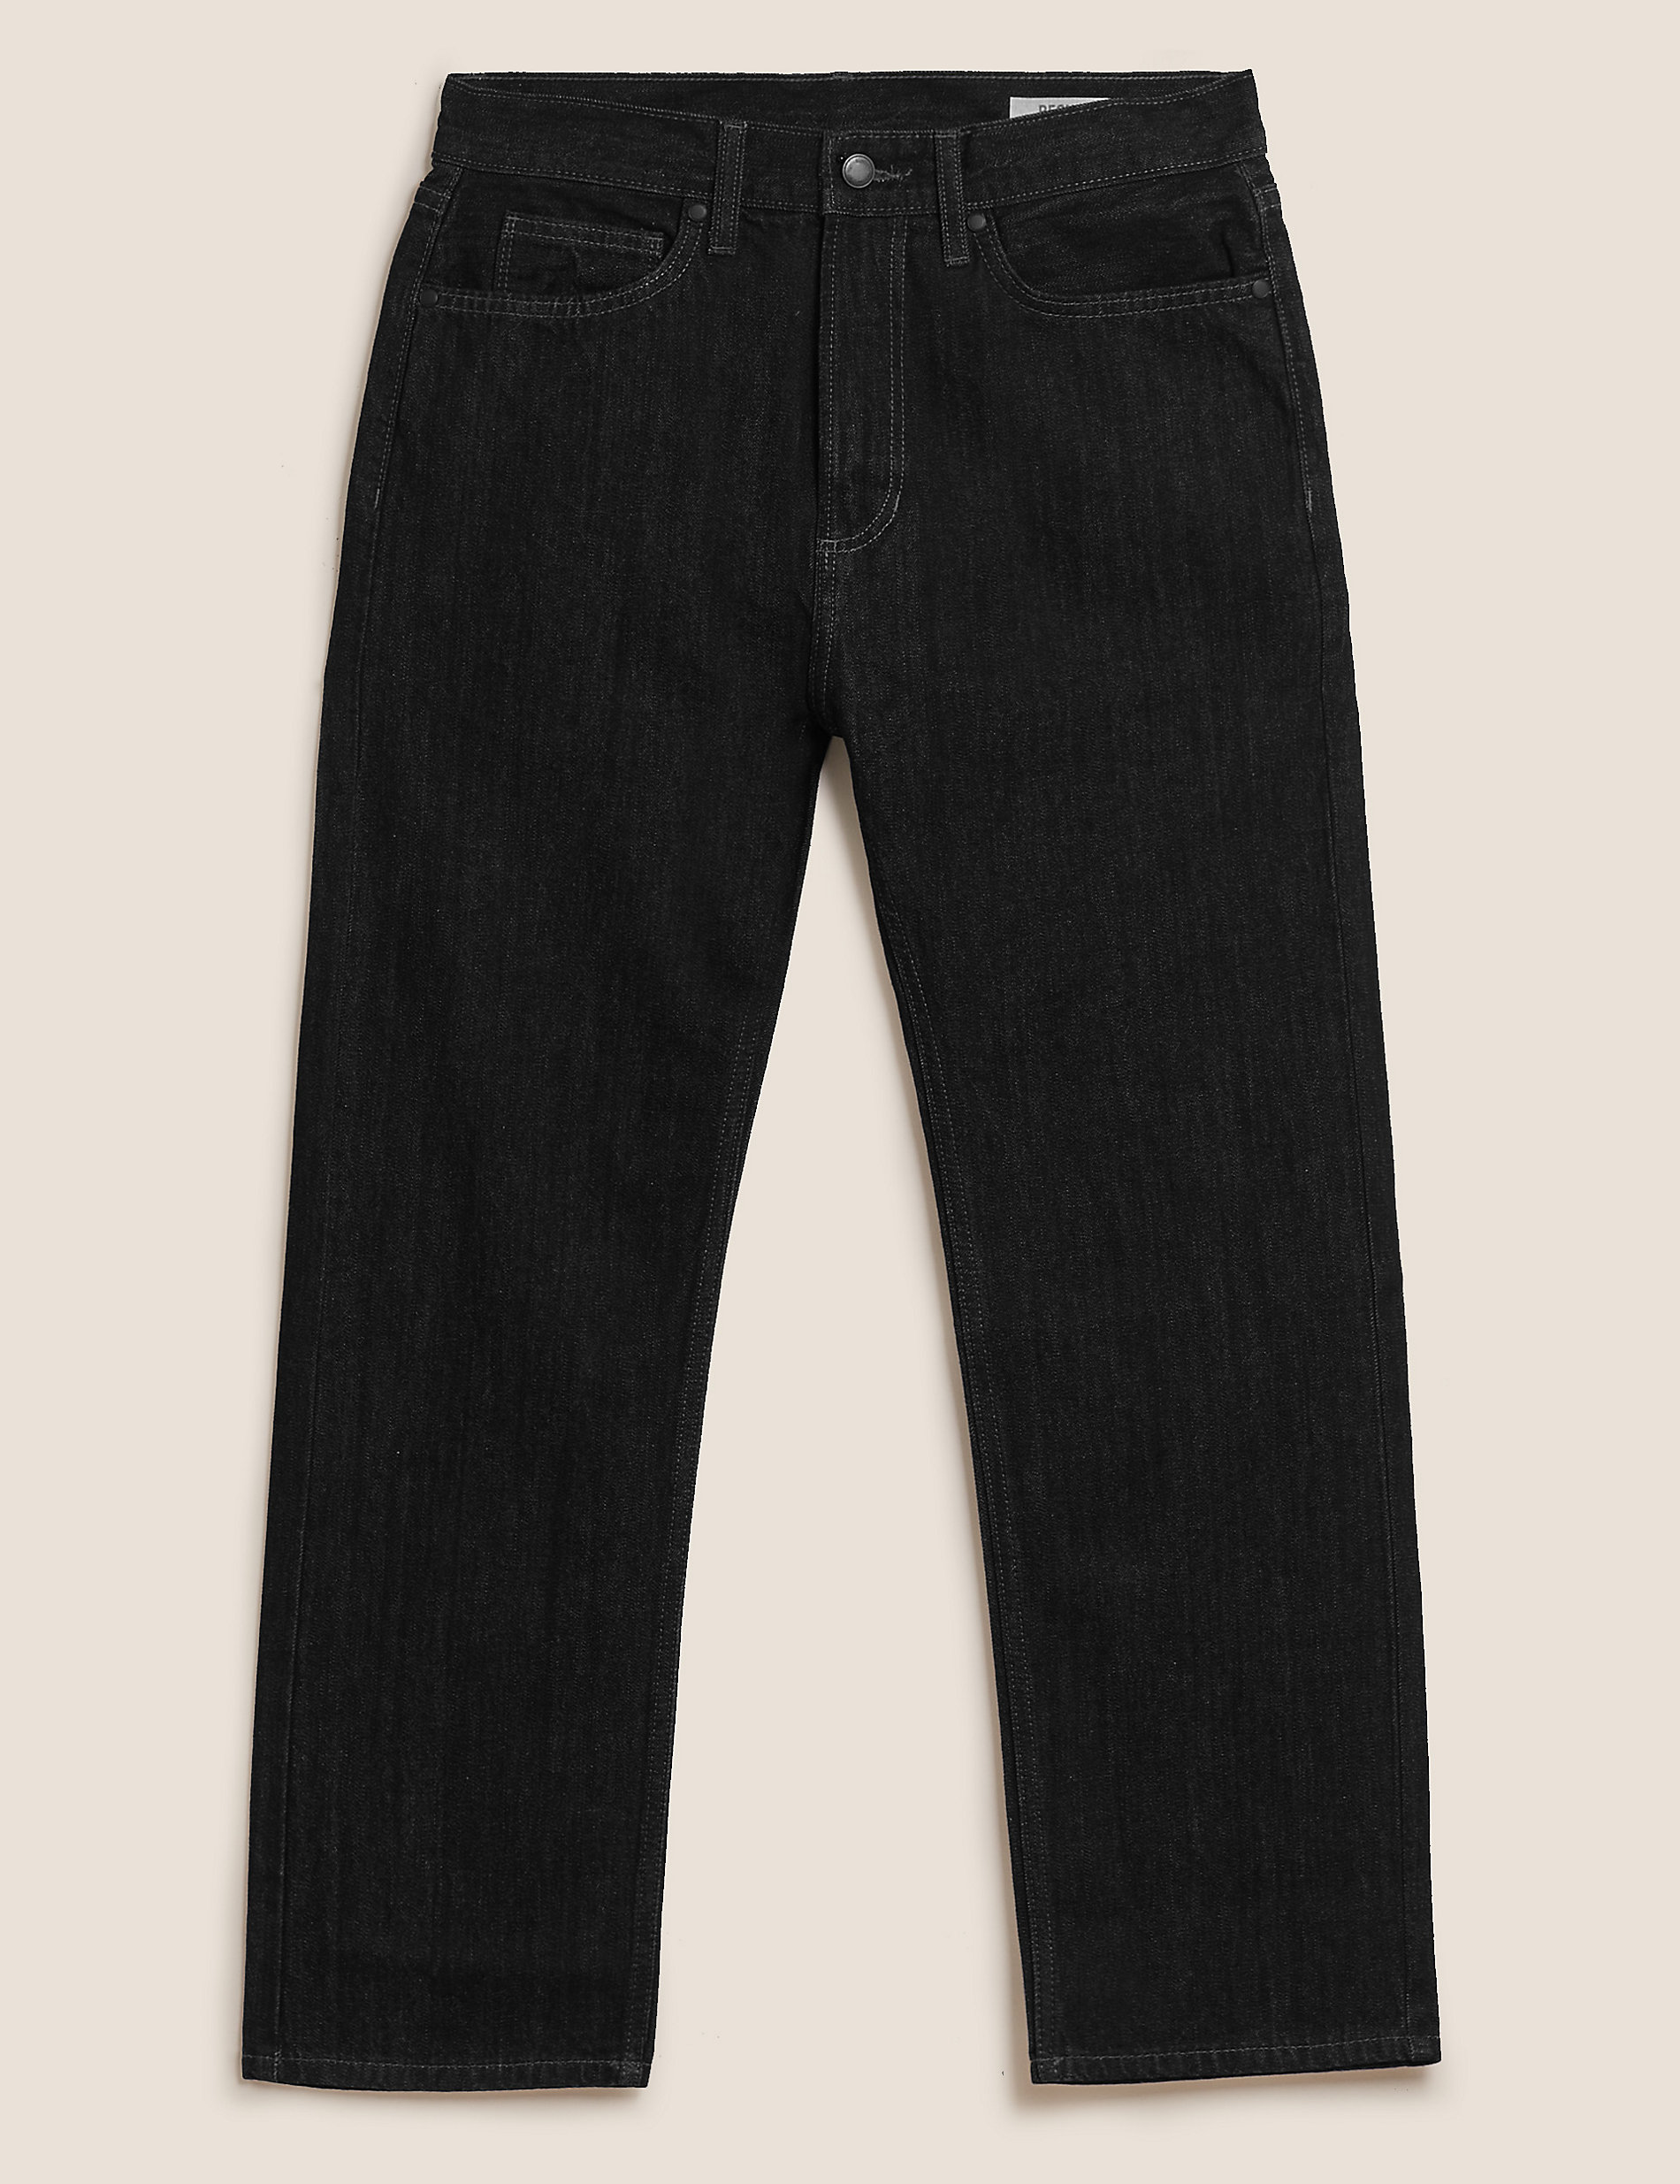 جينز بتصميم مستقيم وطول أقصر من القطن الصافي